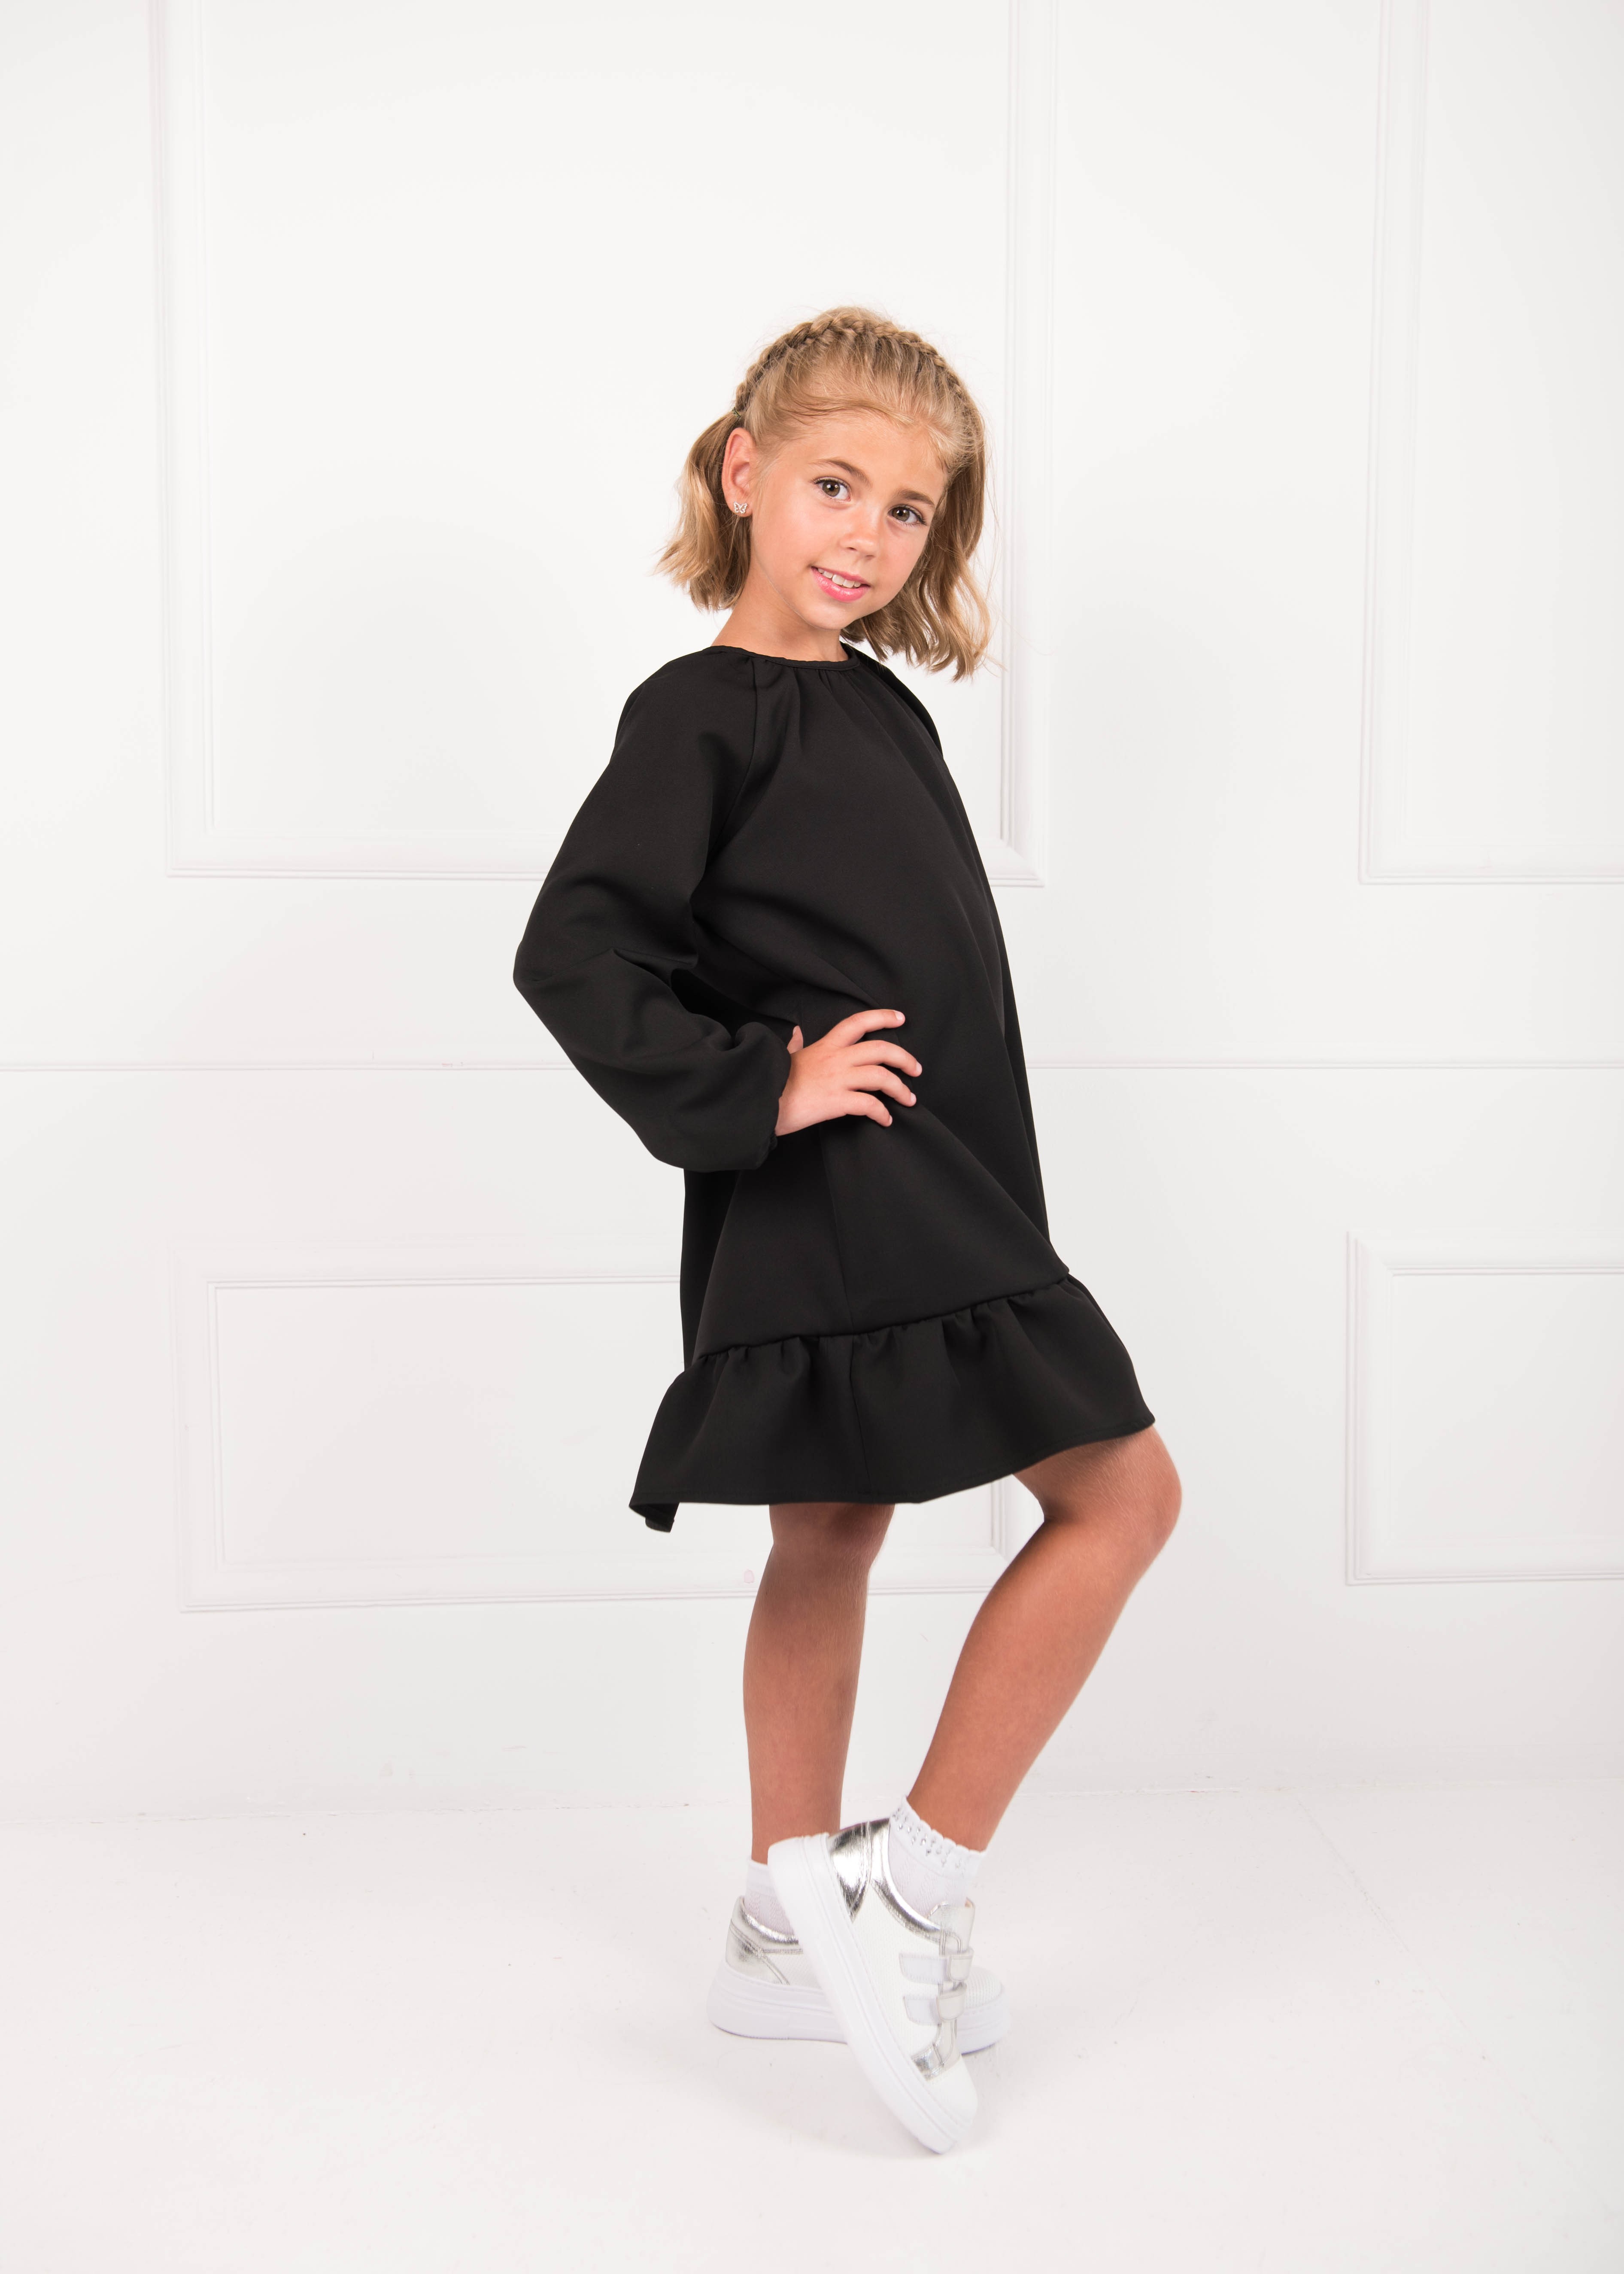 Платье школьное для девочки черное 02670 цена